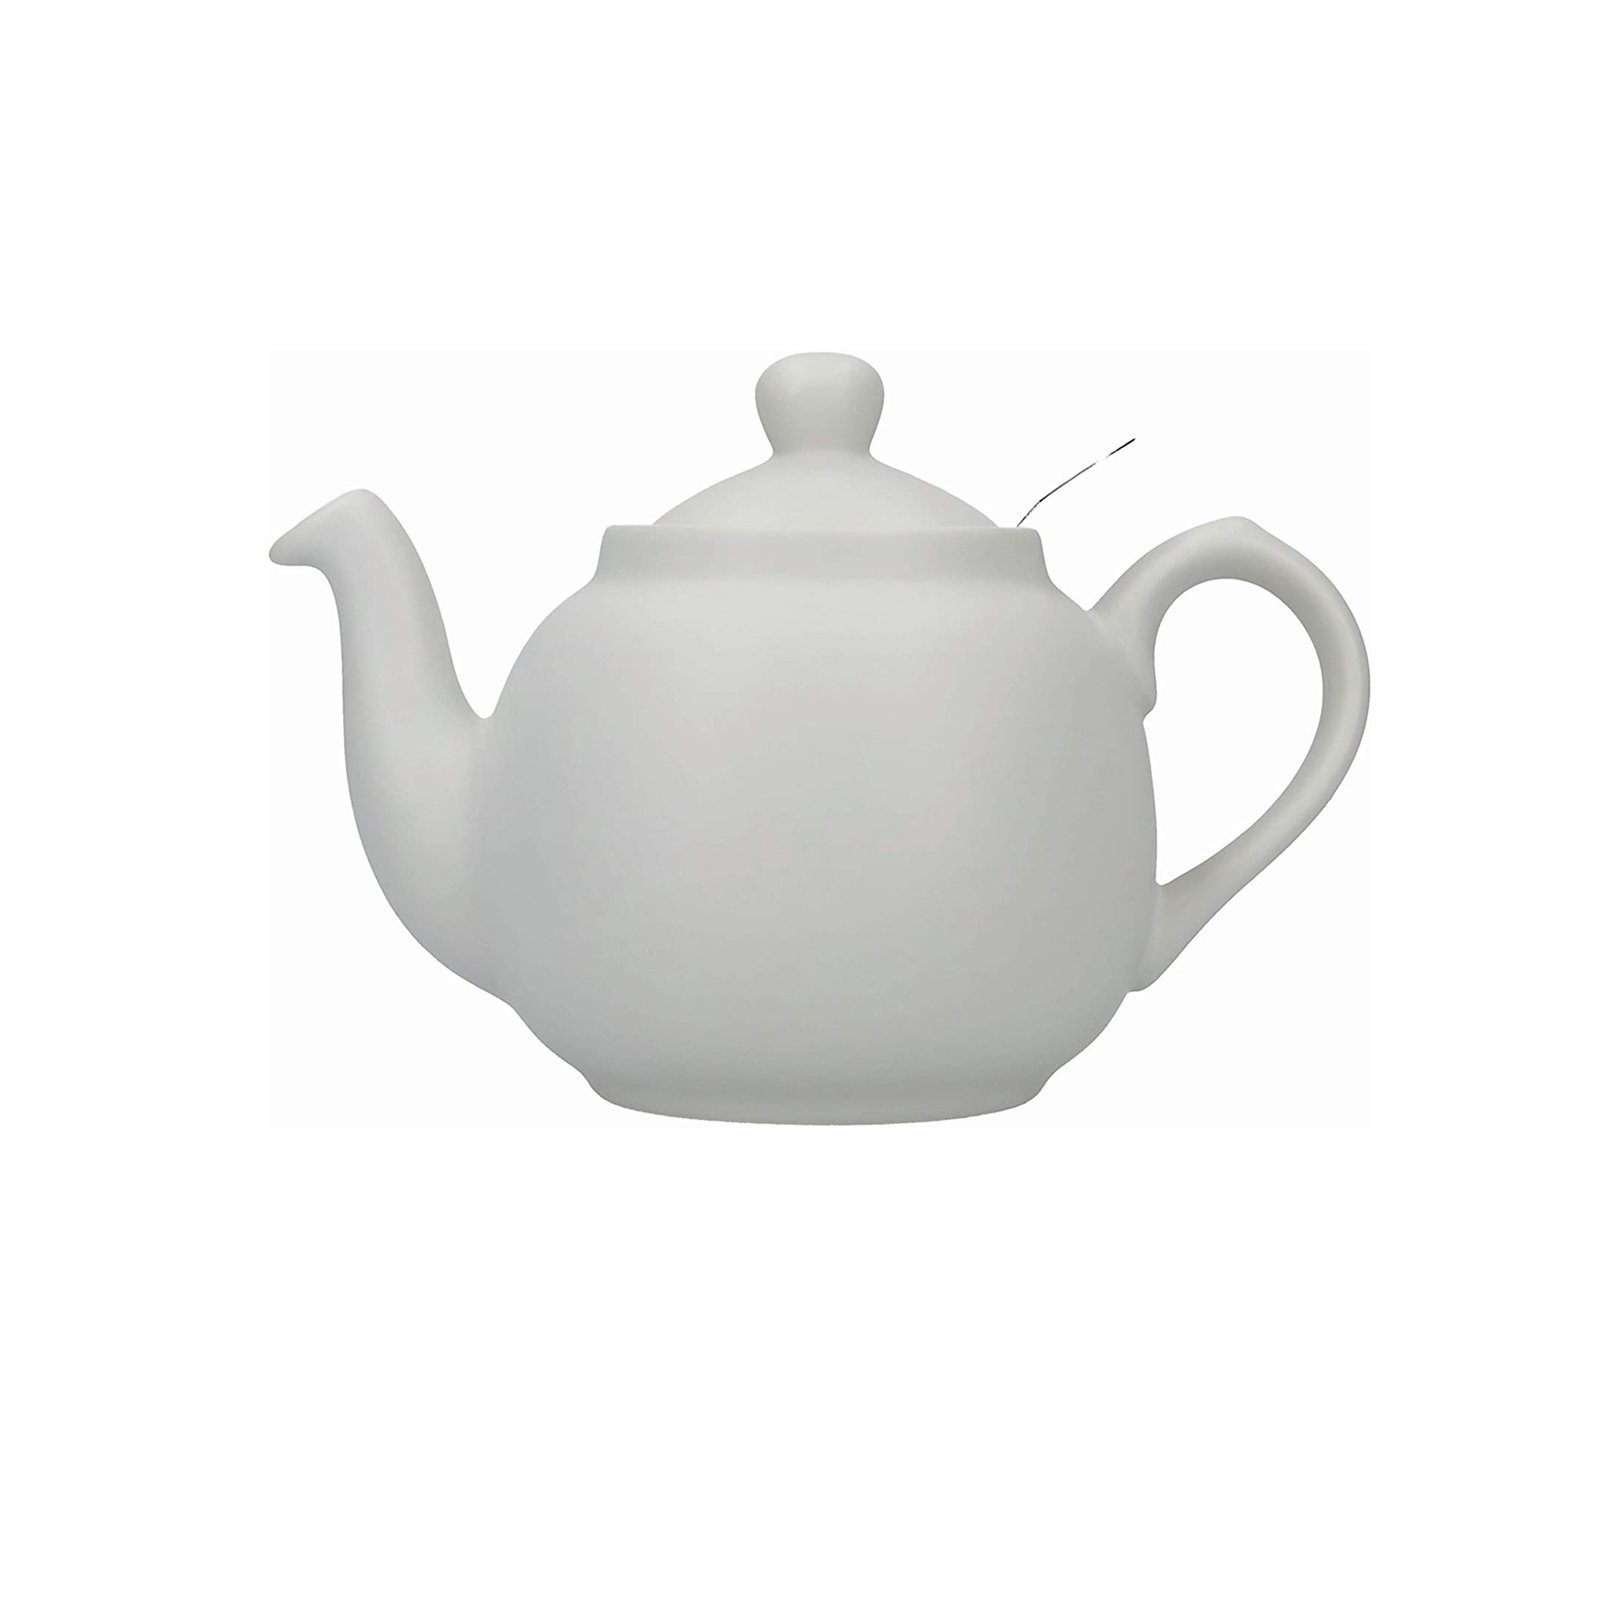 6 Neuetischkultur 1.5 Teekanne, l Tassen, Nordisch Teekanne für Keramik/Edelstahlsieb, Grau